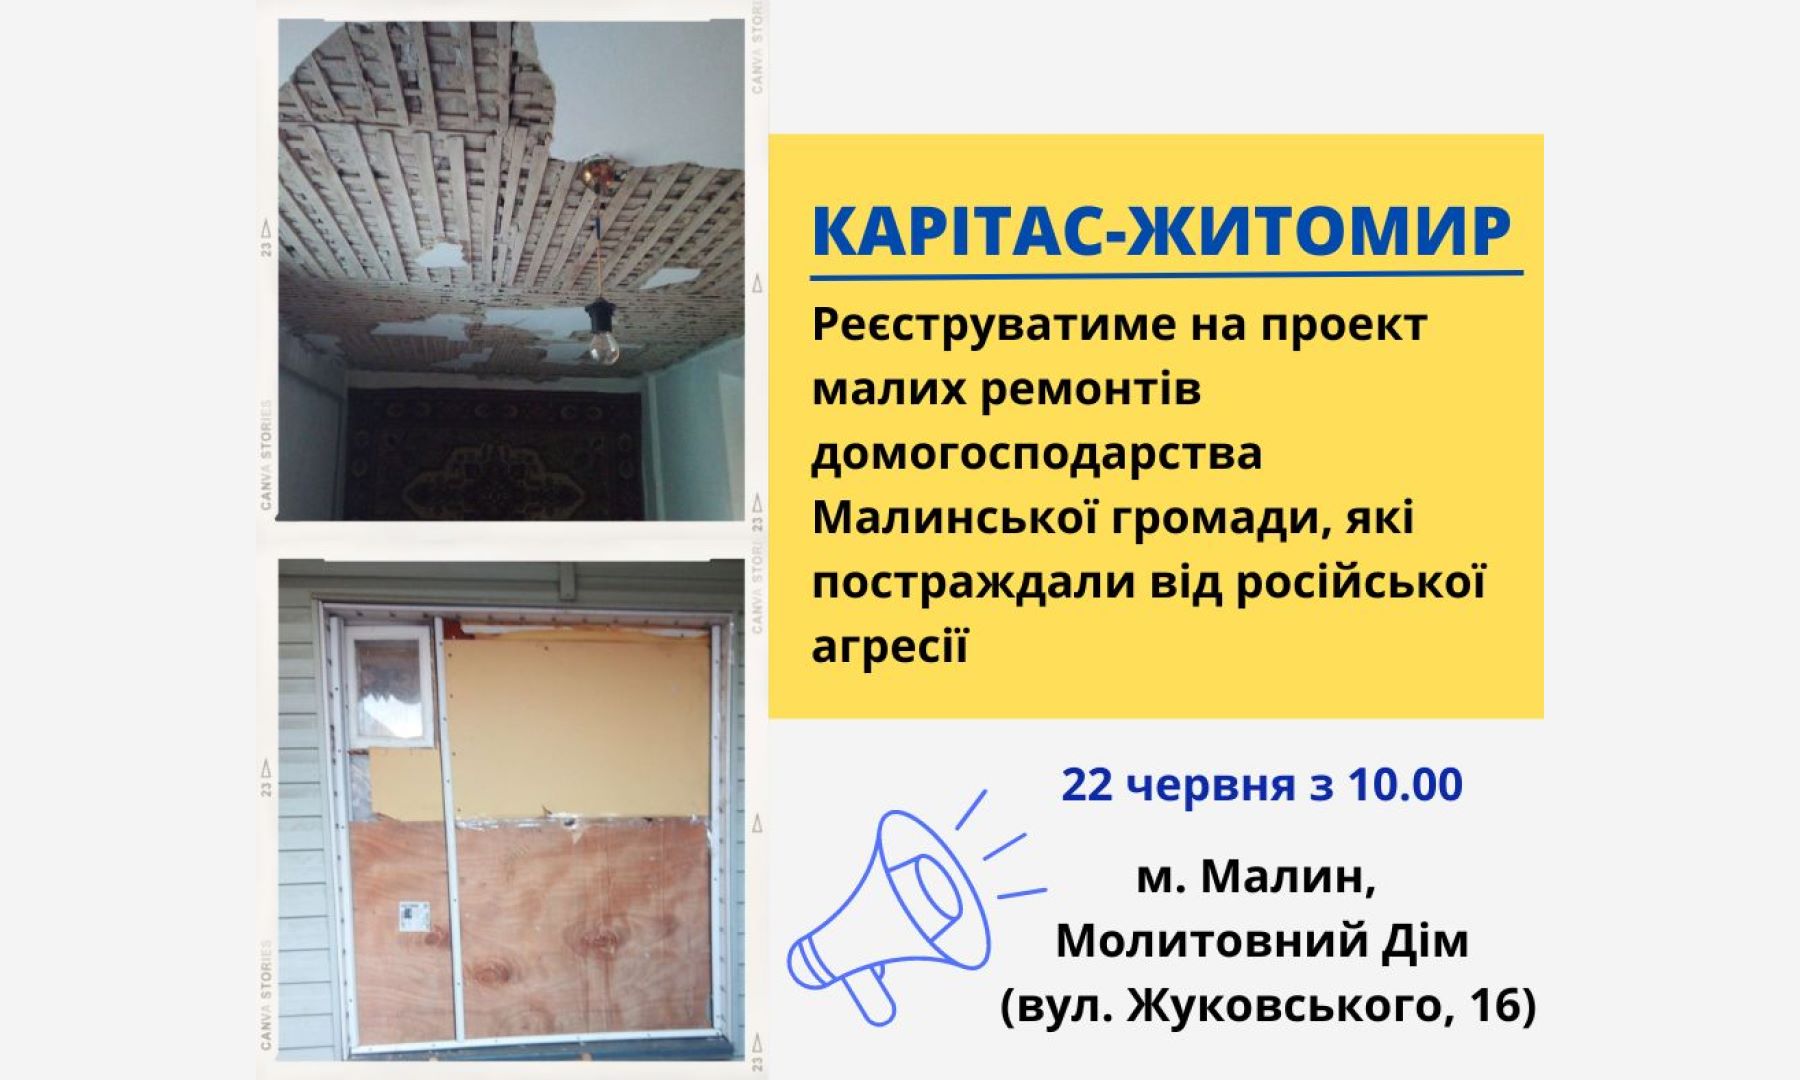 «Карітас-Житомир» реєструватиме домогосподарства Малинської громади на малісередні ремонти